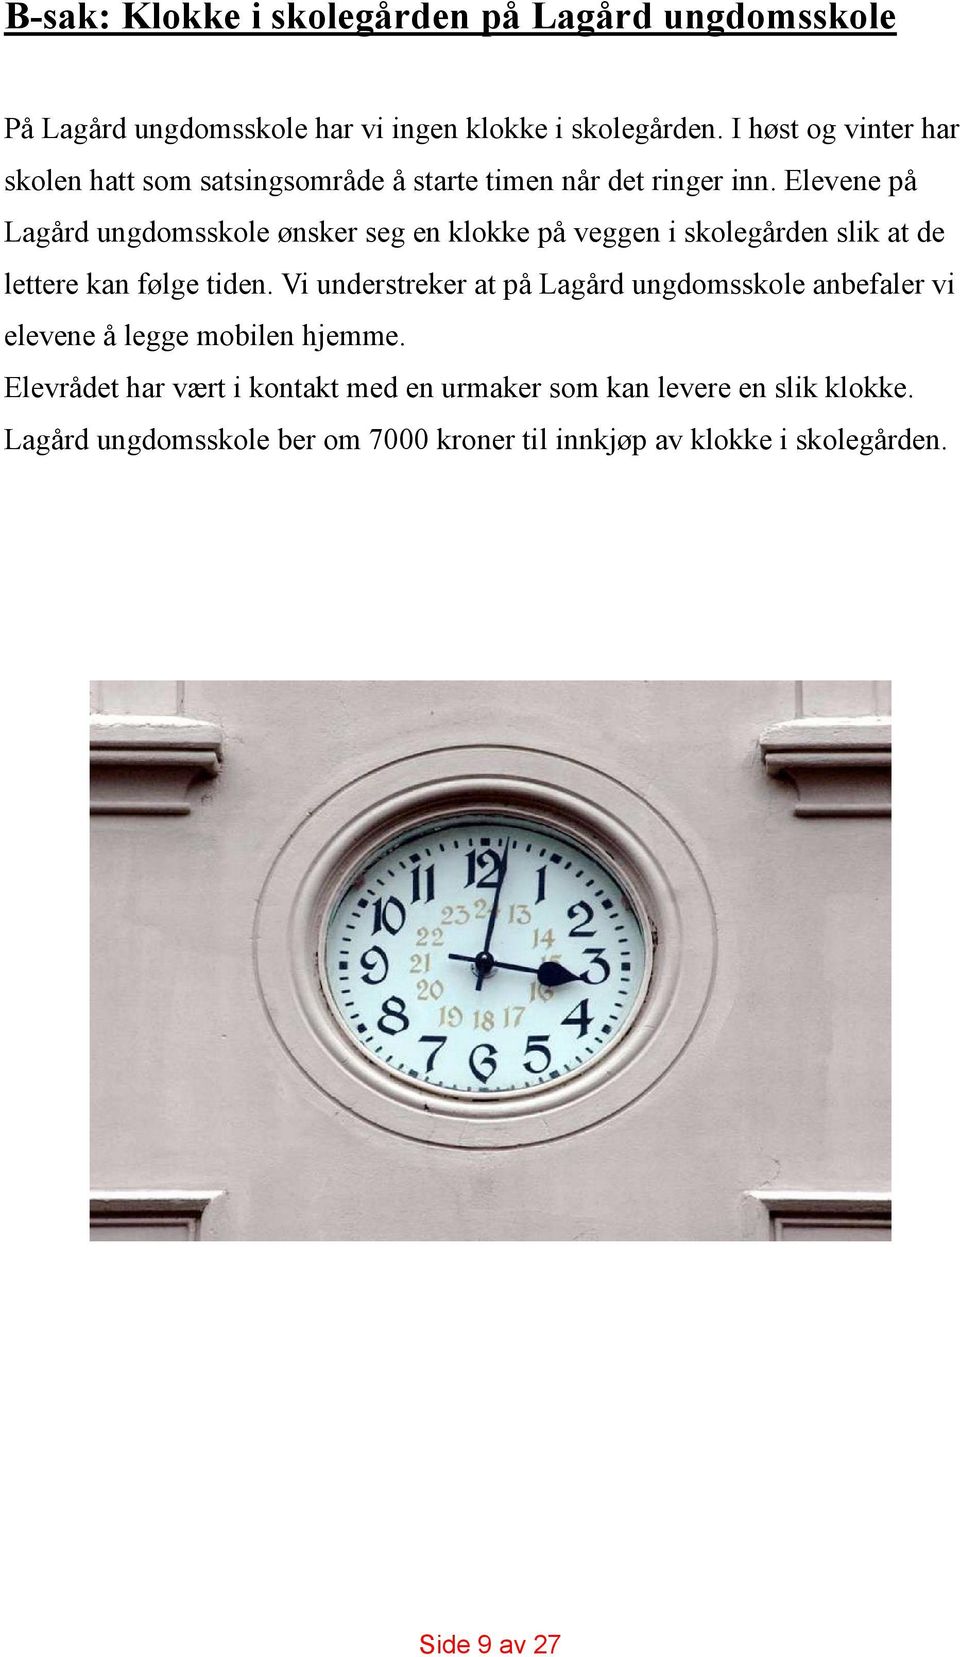 Elevene på Lagård ungdomsskole ønsker seg en klokke på veggen i skolegården slik at de lettere kan følge tiden.